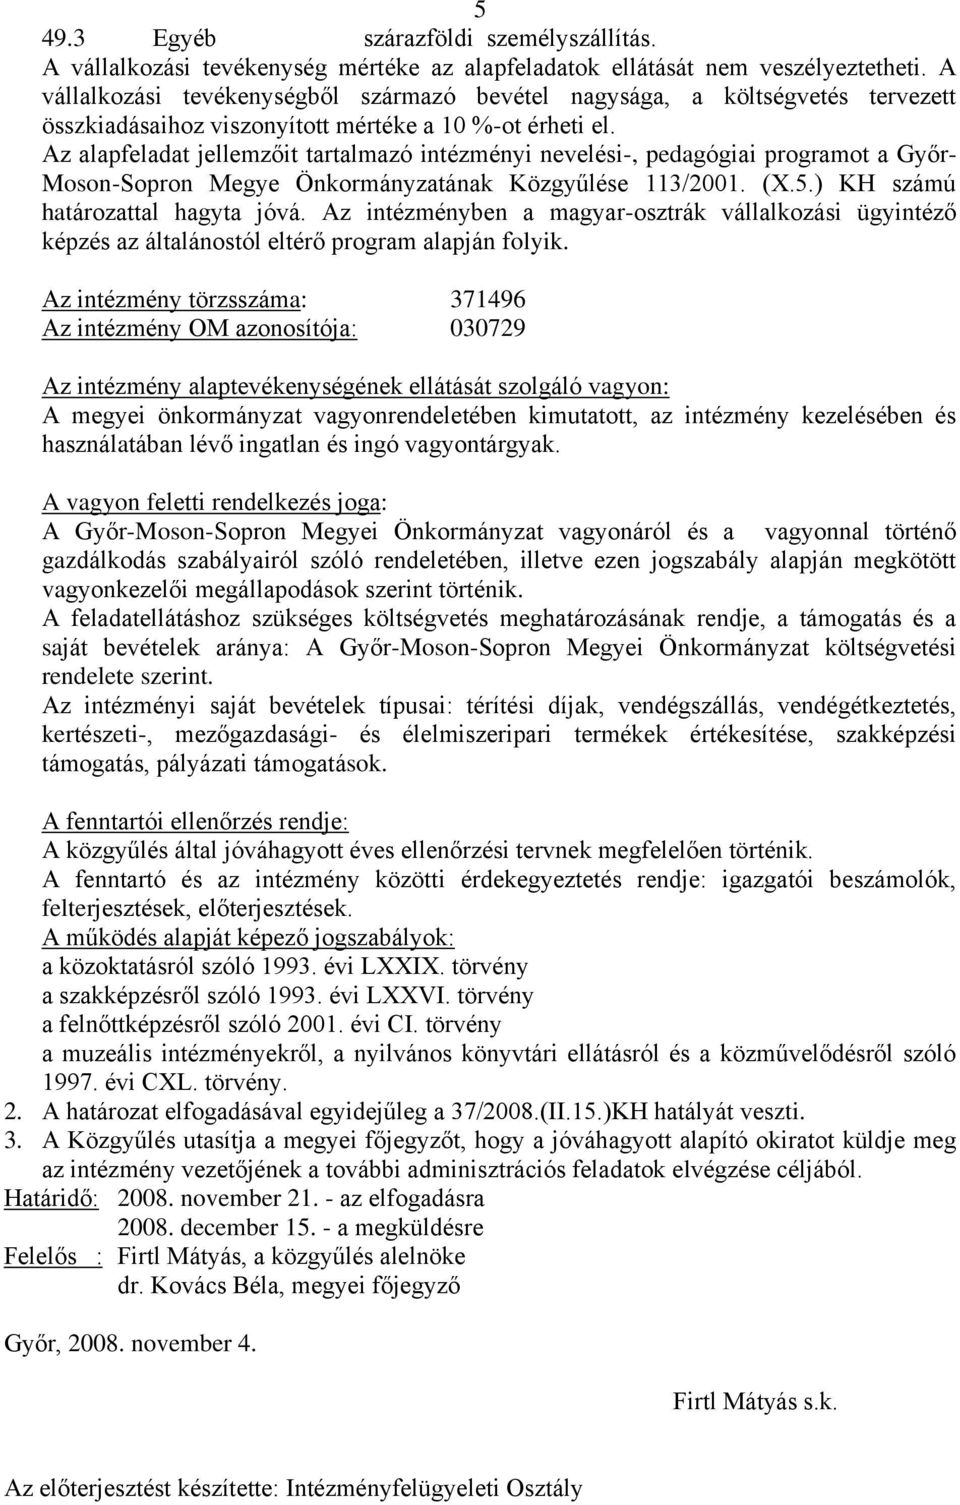 Az alapfeladat jellemzőit tartalmazó intézményi nevelési-, pedagógiai programot a Győr- Moson-Sopron Megye Önkormányzatának Közgyűlése 113/2001. (X.5.) KH számú határozattal hagyta jóvá.